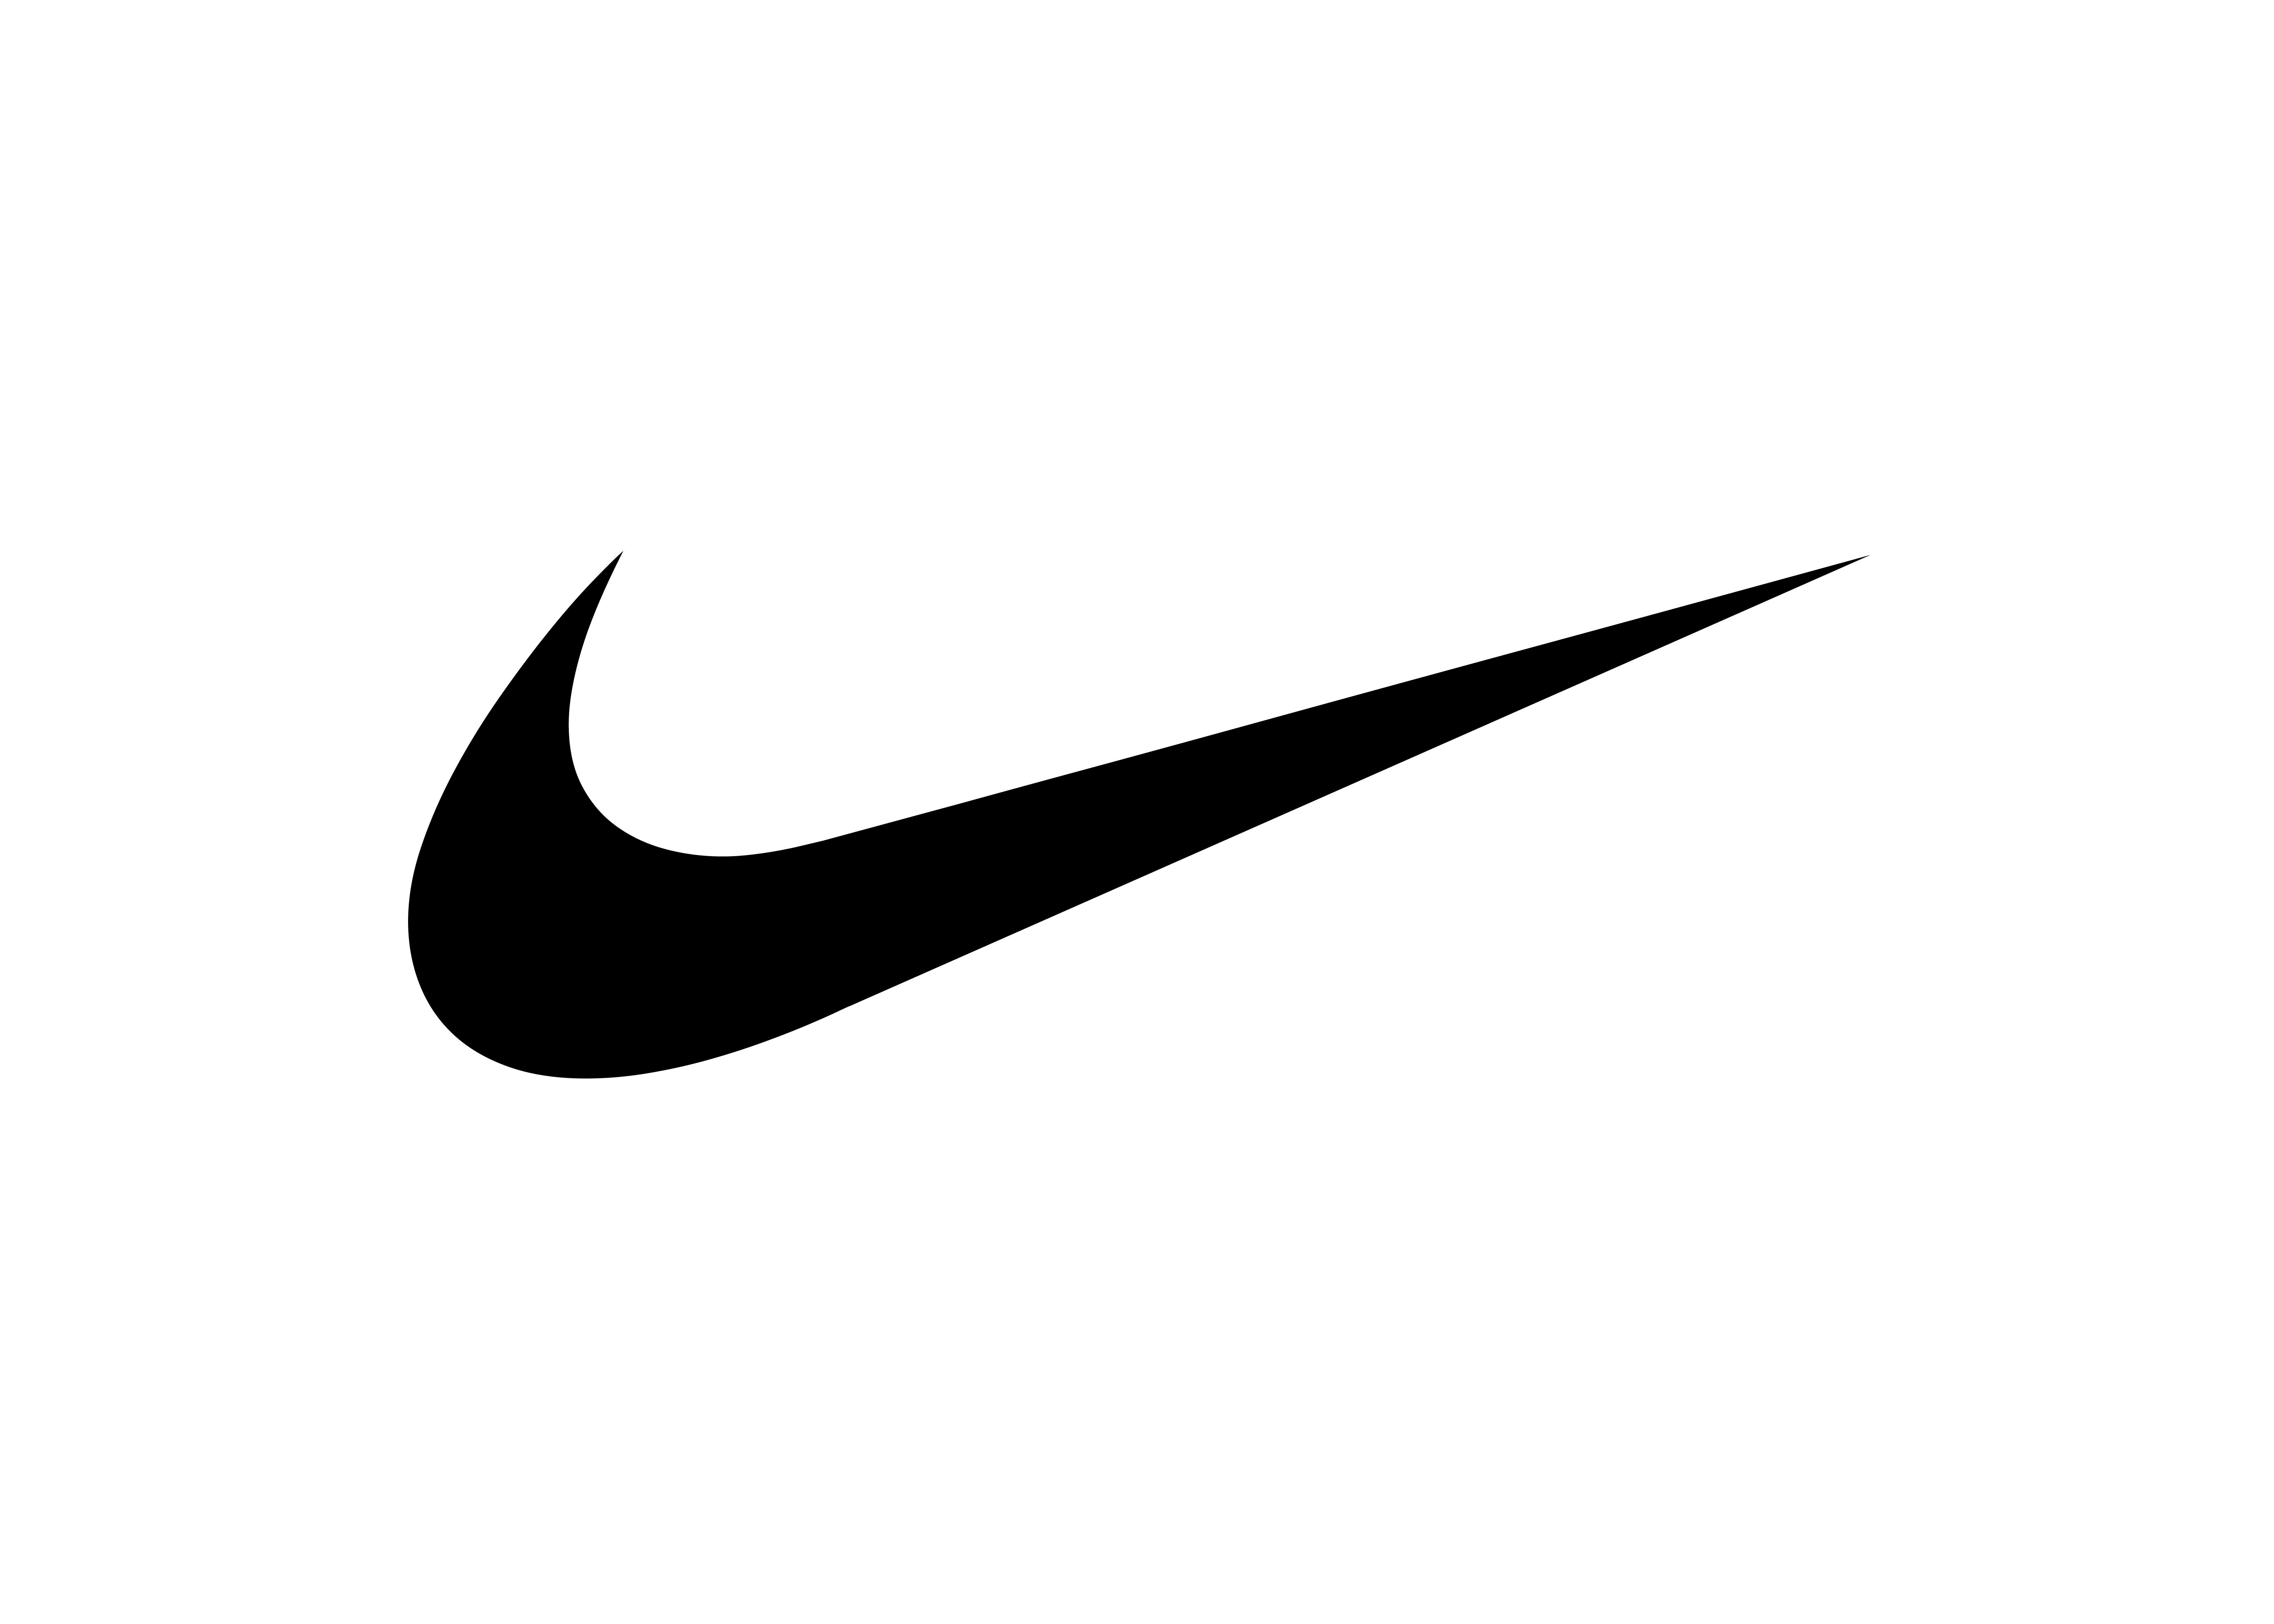 Camouflage Nike Logo - Nike Blazer Mid PRM “Camo Swoosh” | THE DROP